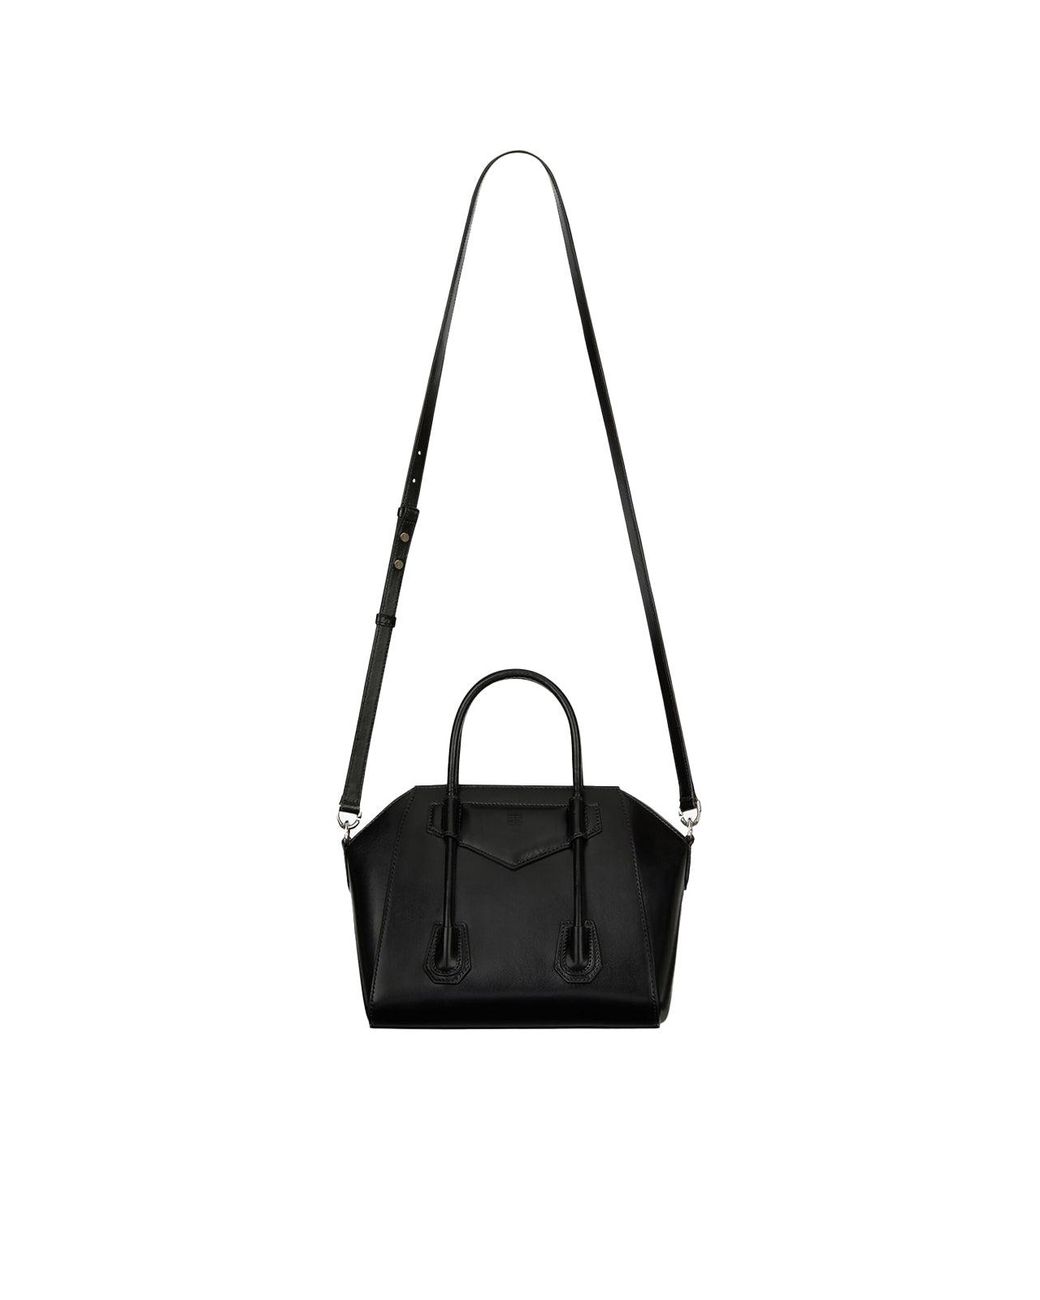 Mini Antigona Bag in Black in SHW